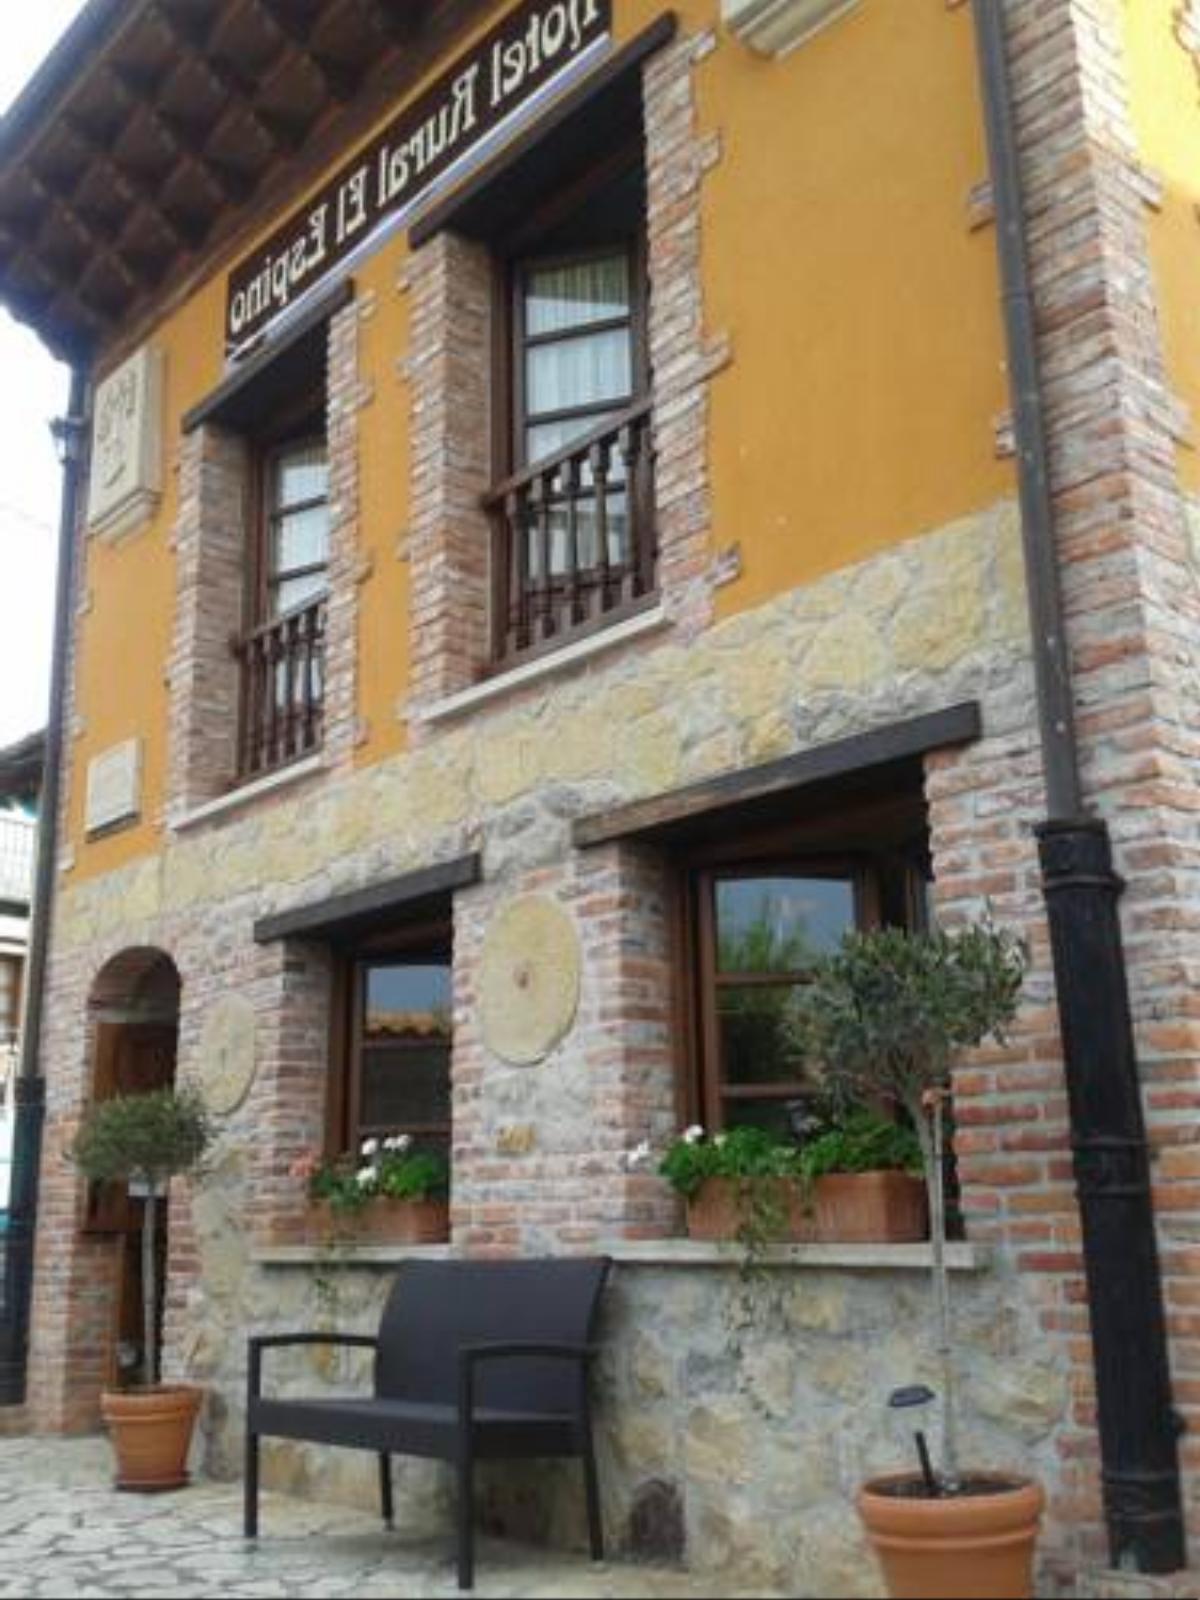 Hotel Rural El Espino Hotel Corao Spain